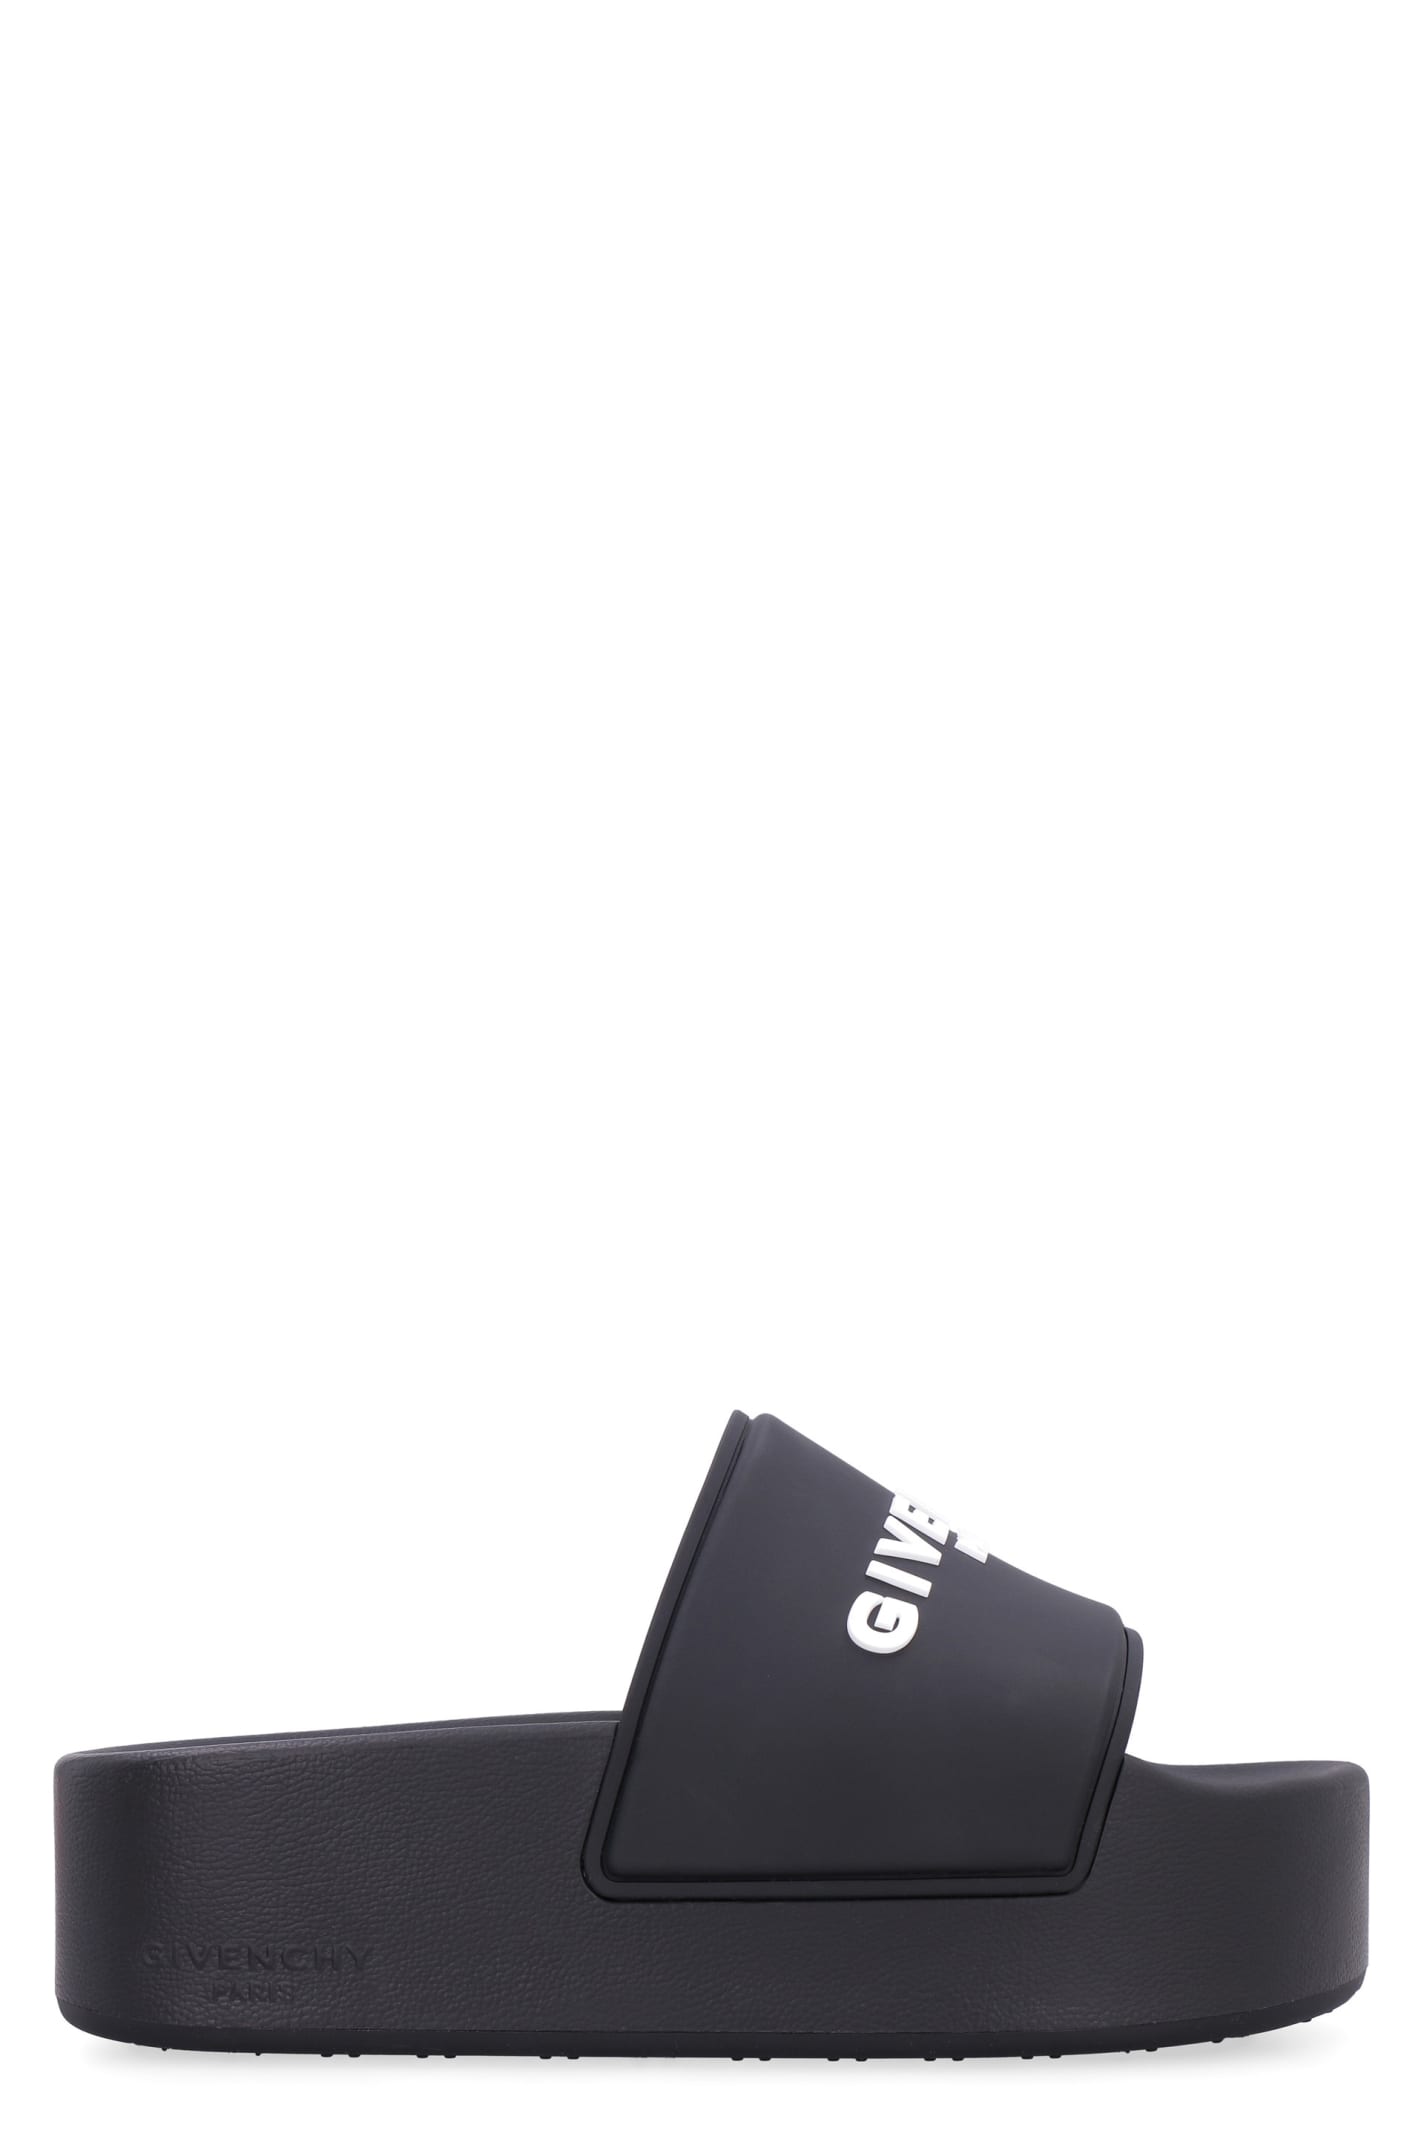 Givenchy Logoed Rubber Platform Slides